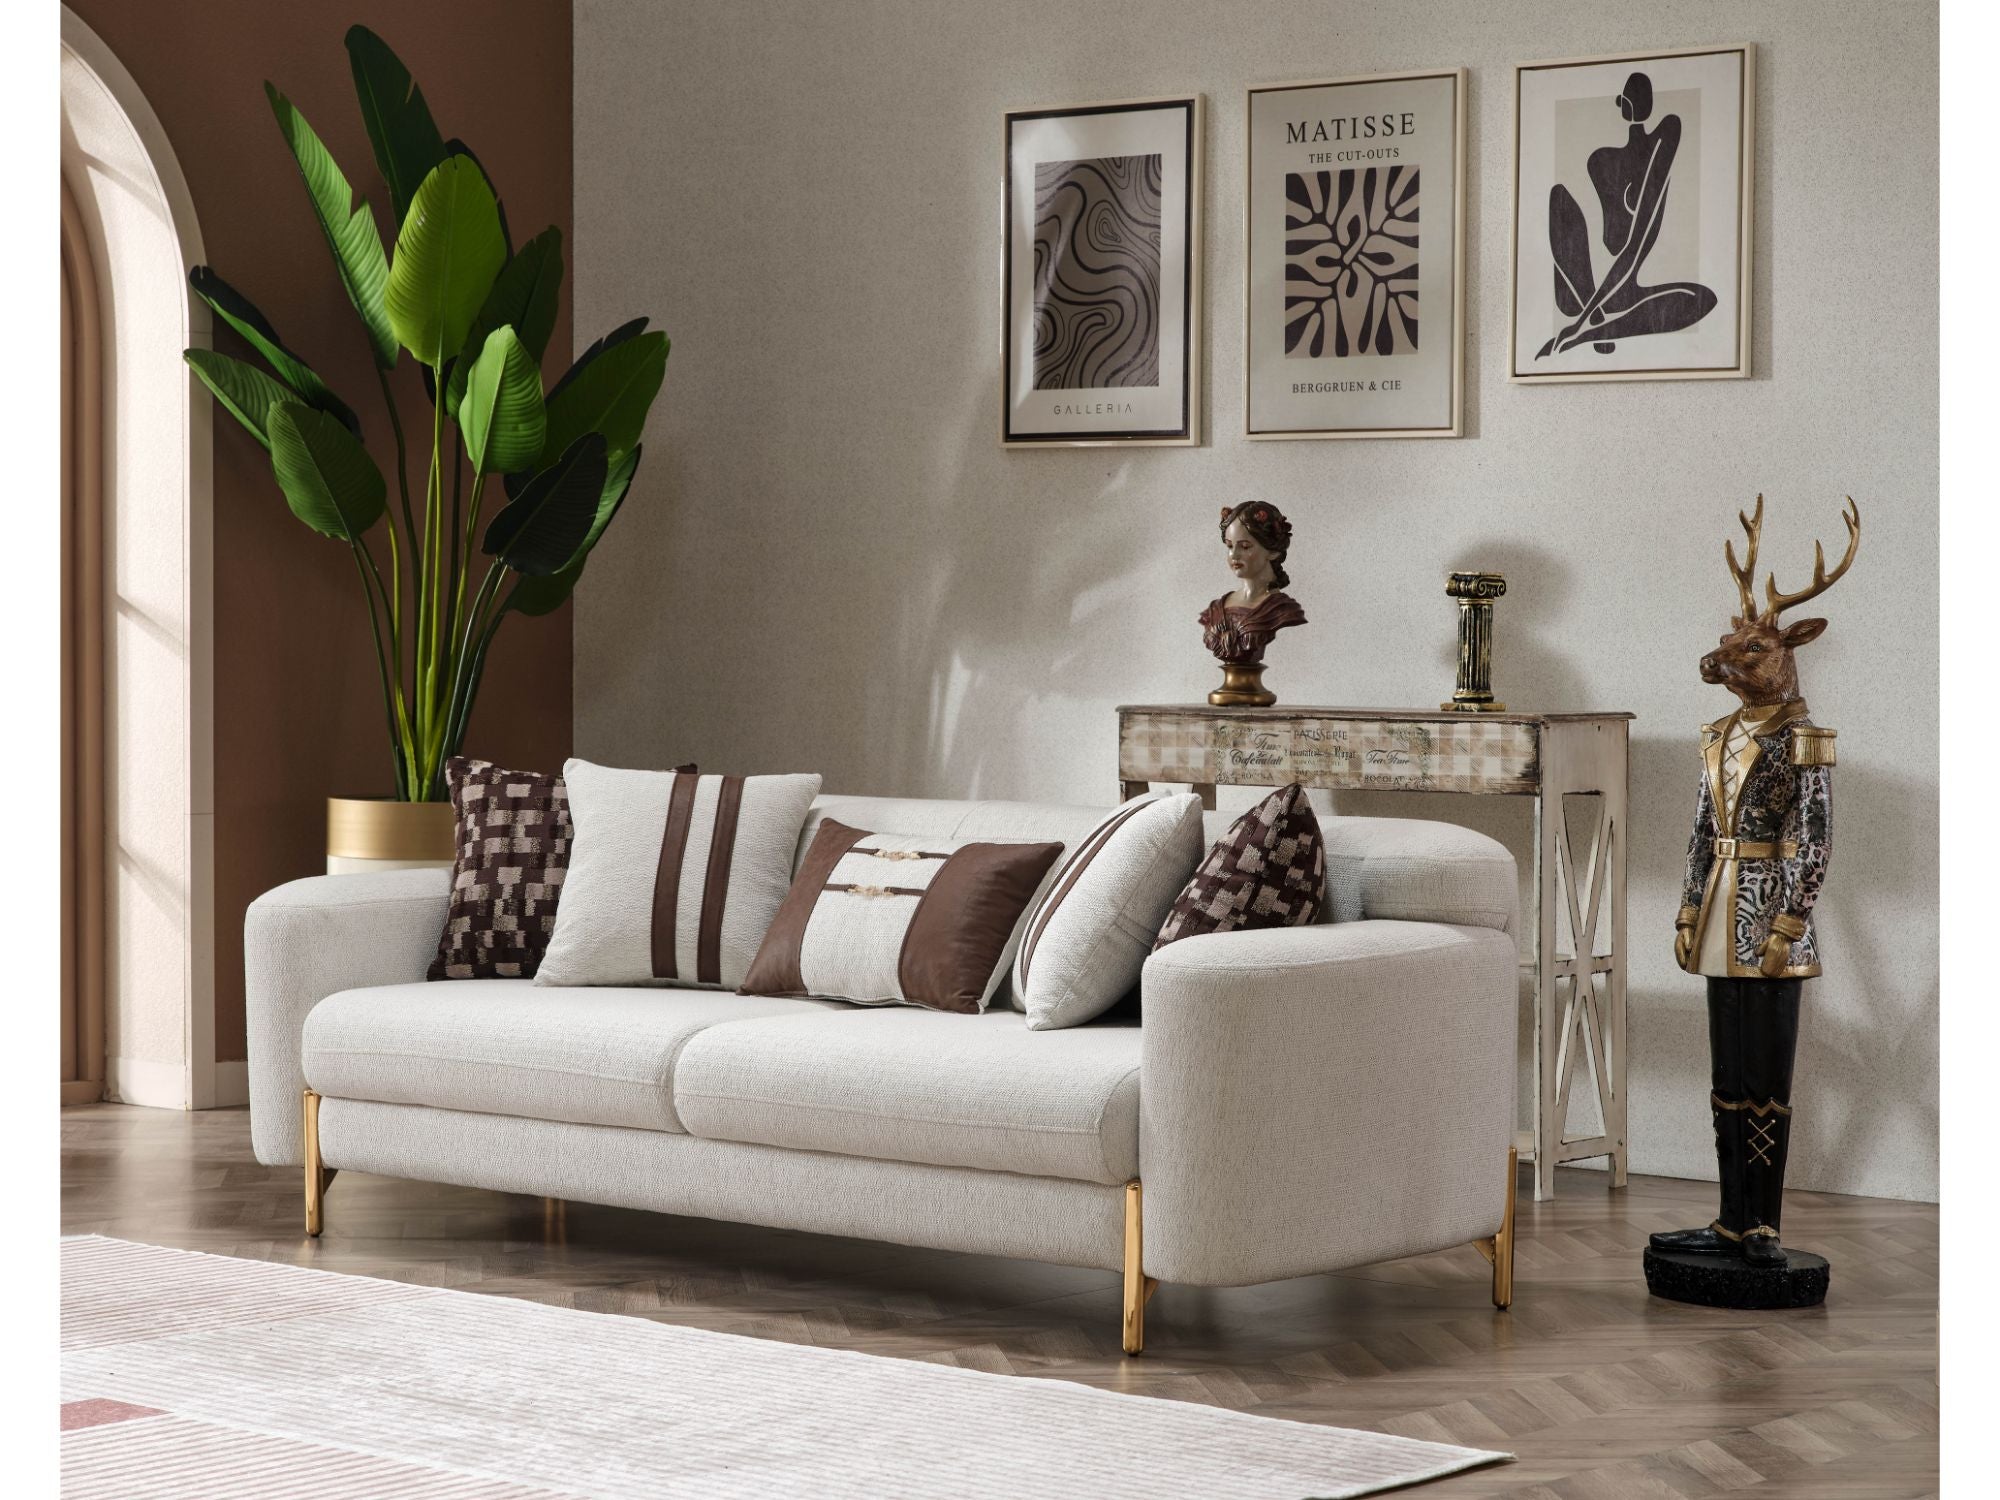 Pandora Stationary Livingroom Set (2 Sofa & 2 Chair)